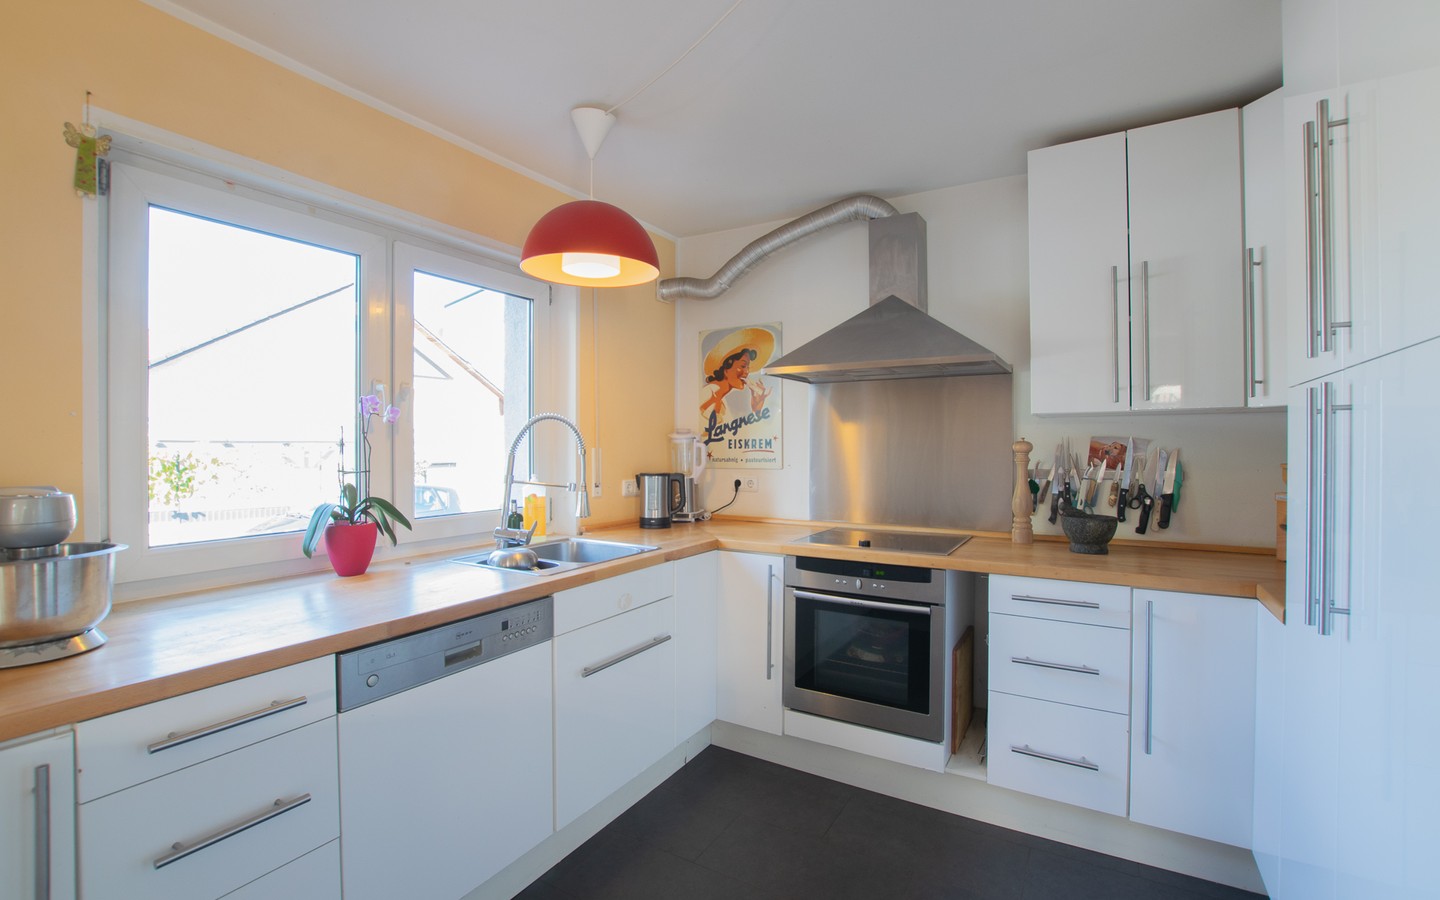 Küche - Modernes Einfamilienhaus auf großem Grundstück in ruhiger Lage von Lobenfeld +Virtuelle 3D-Tour+